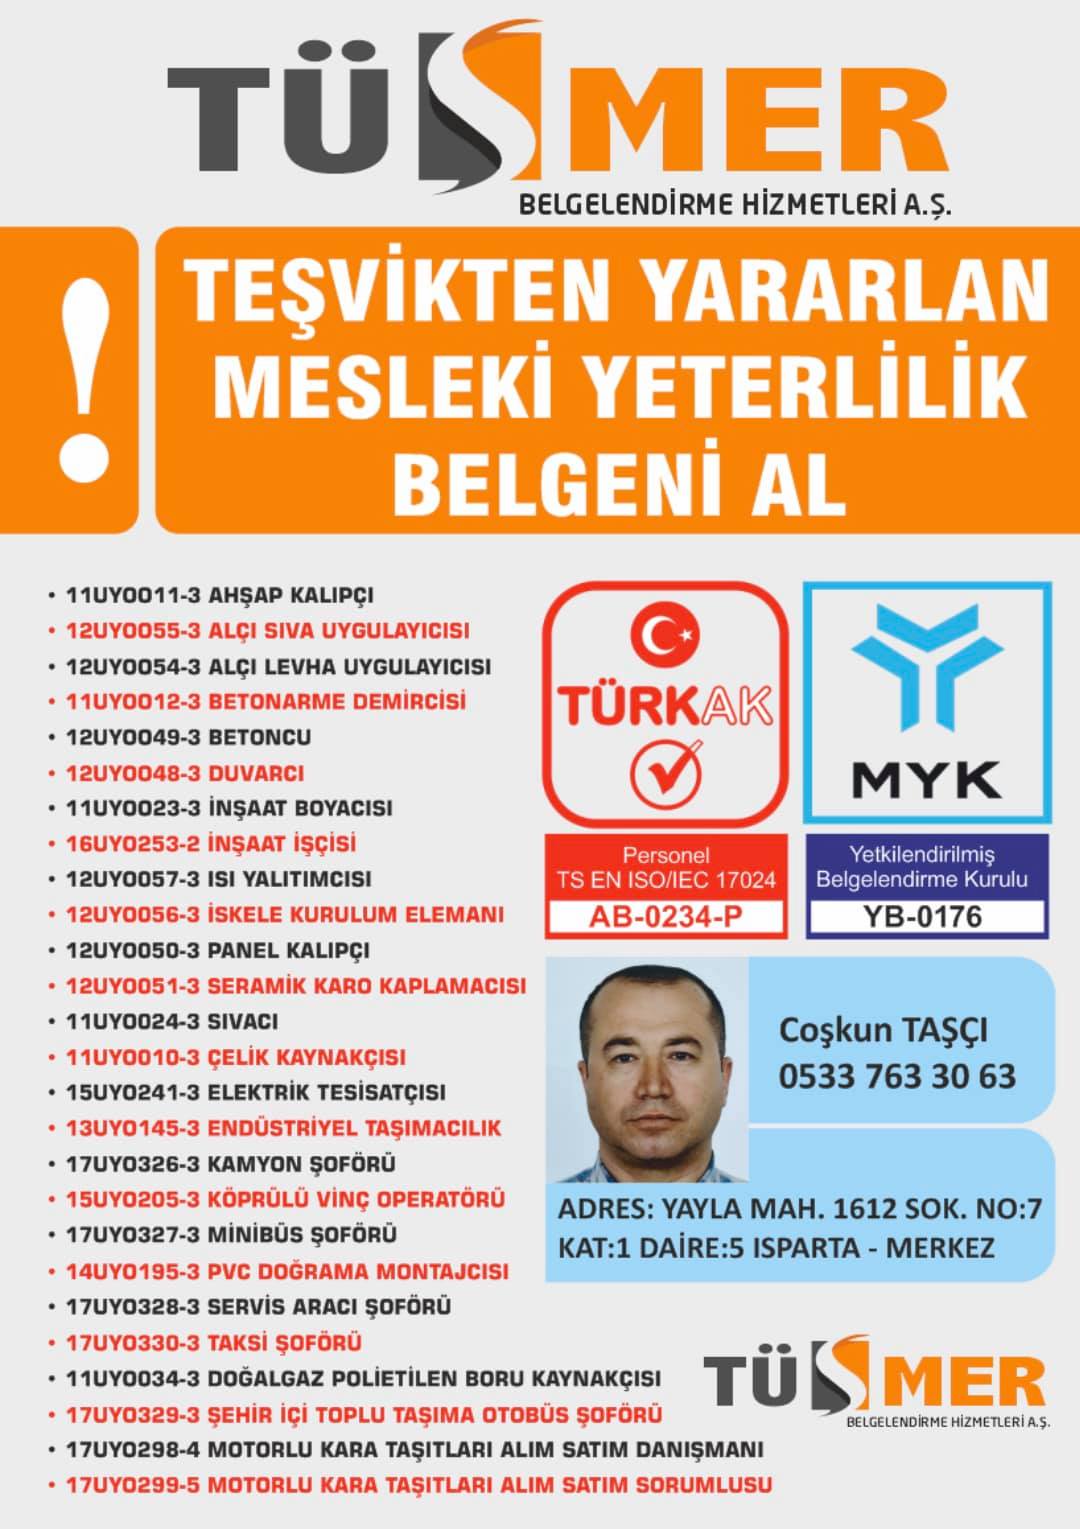 MYK MESLEKİ YETERLİLİK BELGESİ  Fatih Esenyurt İstanbul